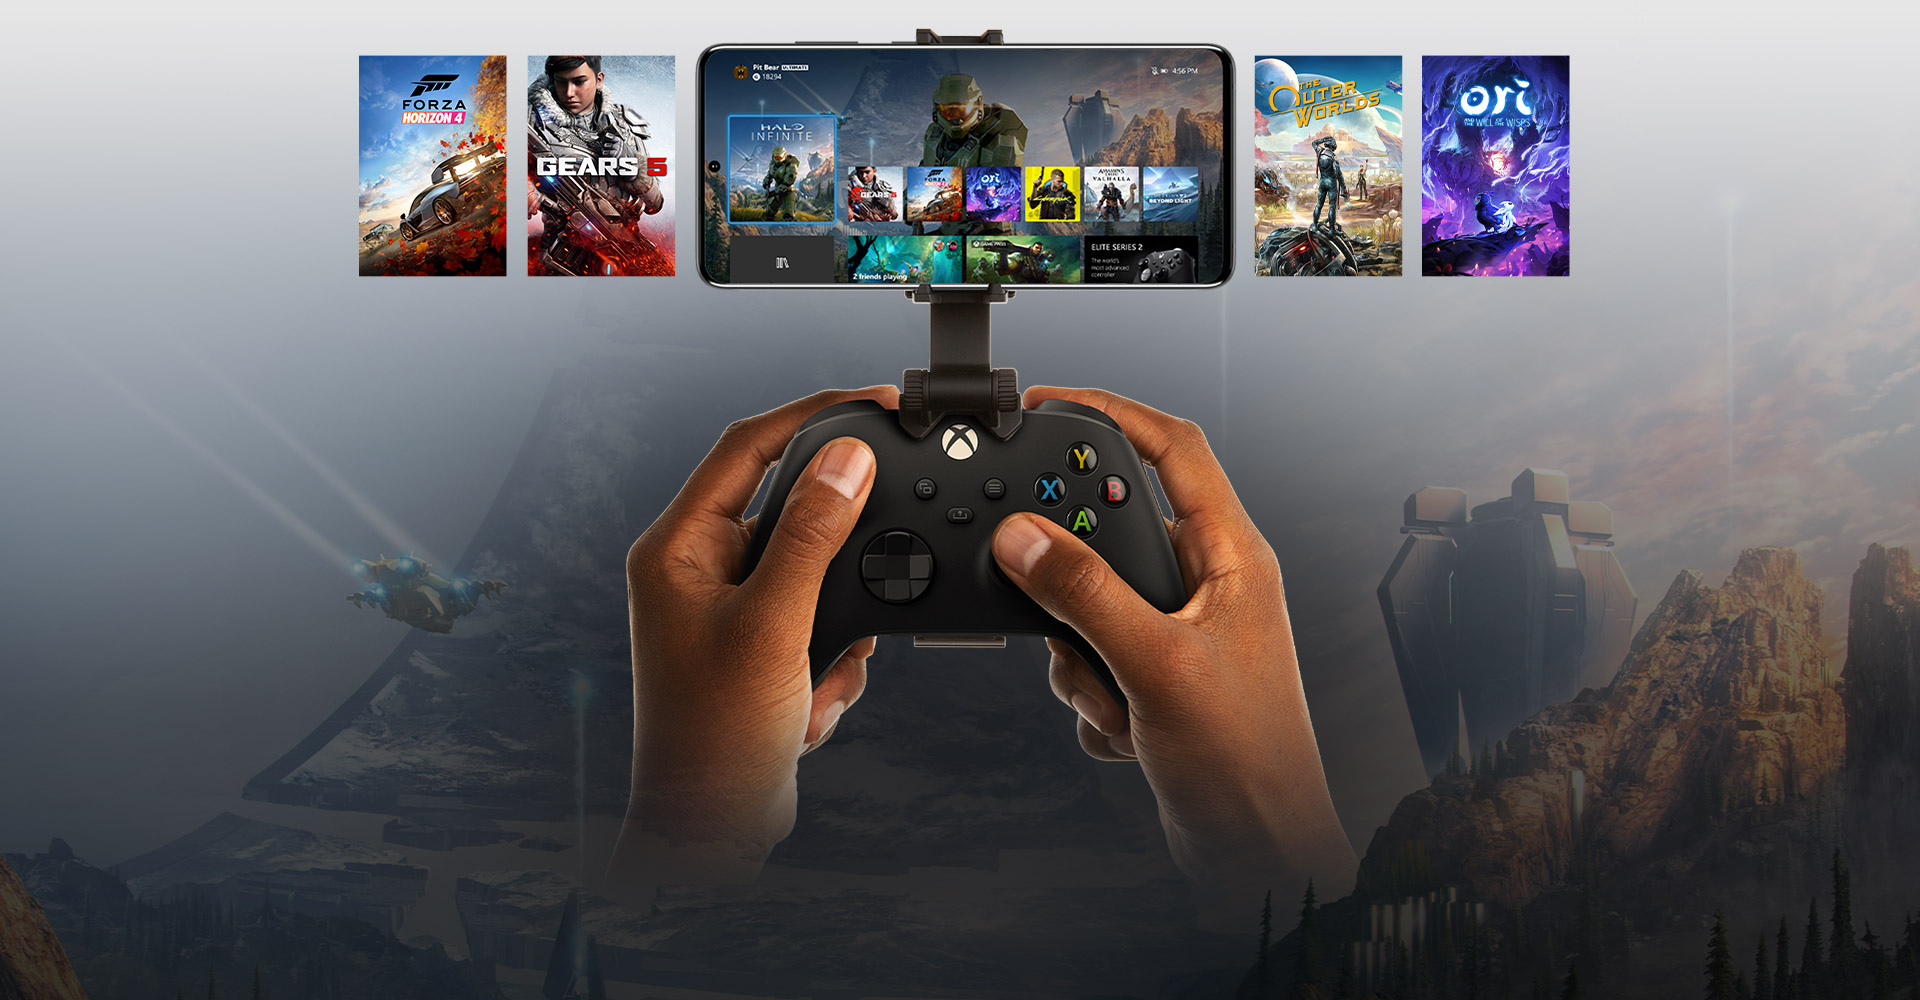 Un controller per Xbox agganciato a un dispositivo mobile sul quale è visualizzata una selezione di titoli di gioco. Il mondo di Halo Infinite si estende oltre il telefono.